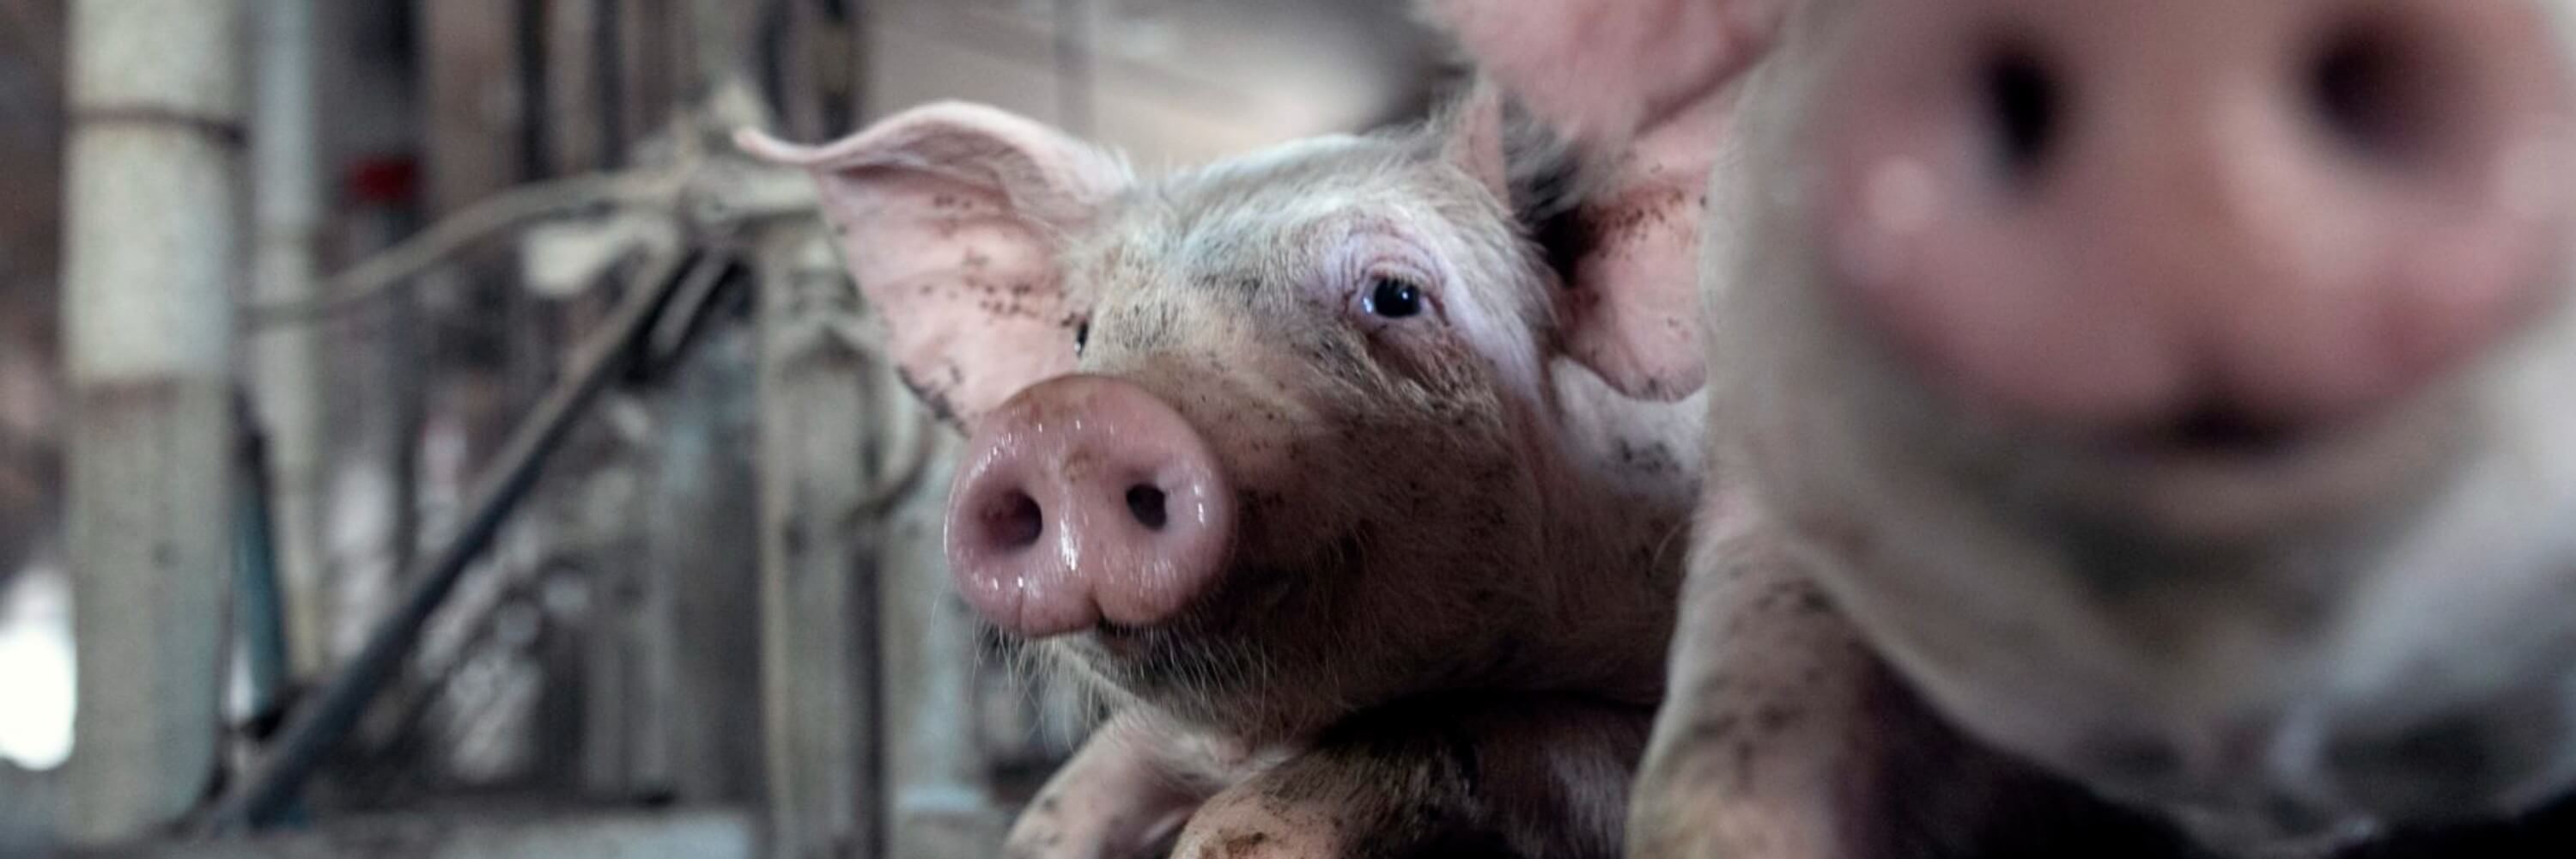 piglet in factory farm UK